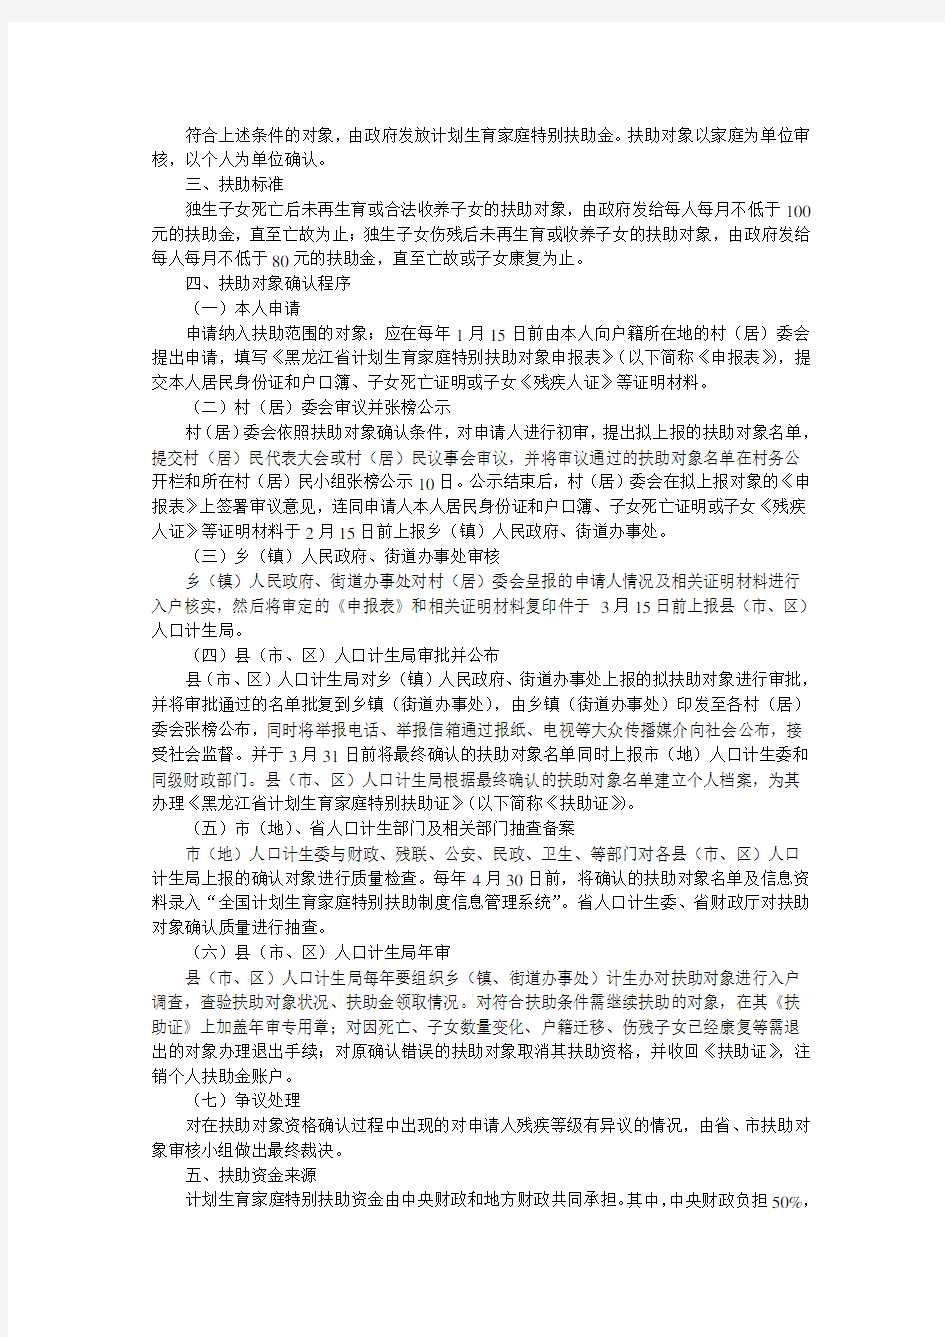 黑龙江省计划生育家庭特别扶助制度实施方案